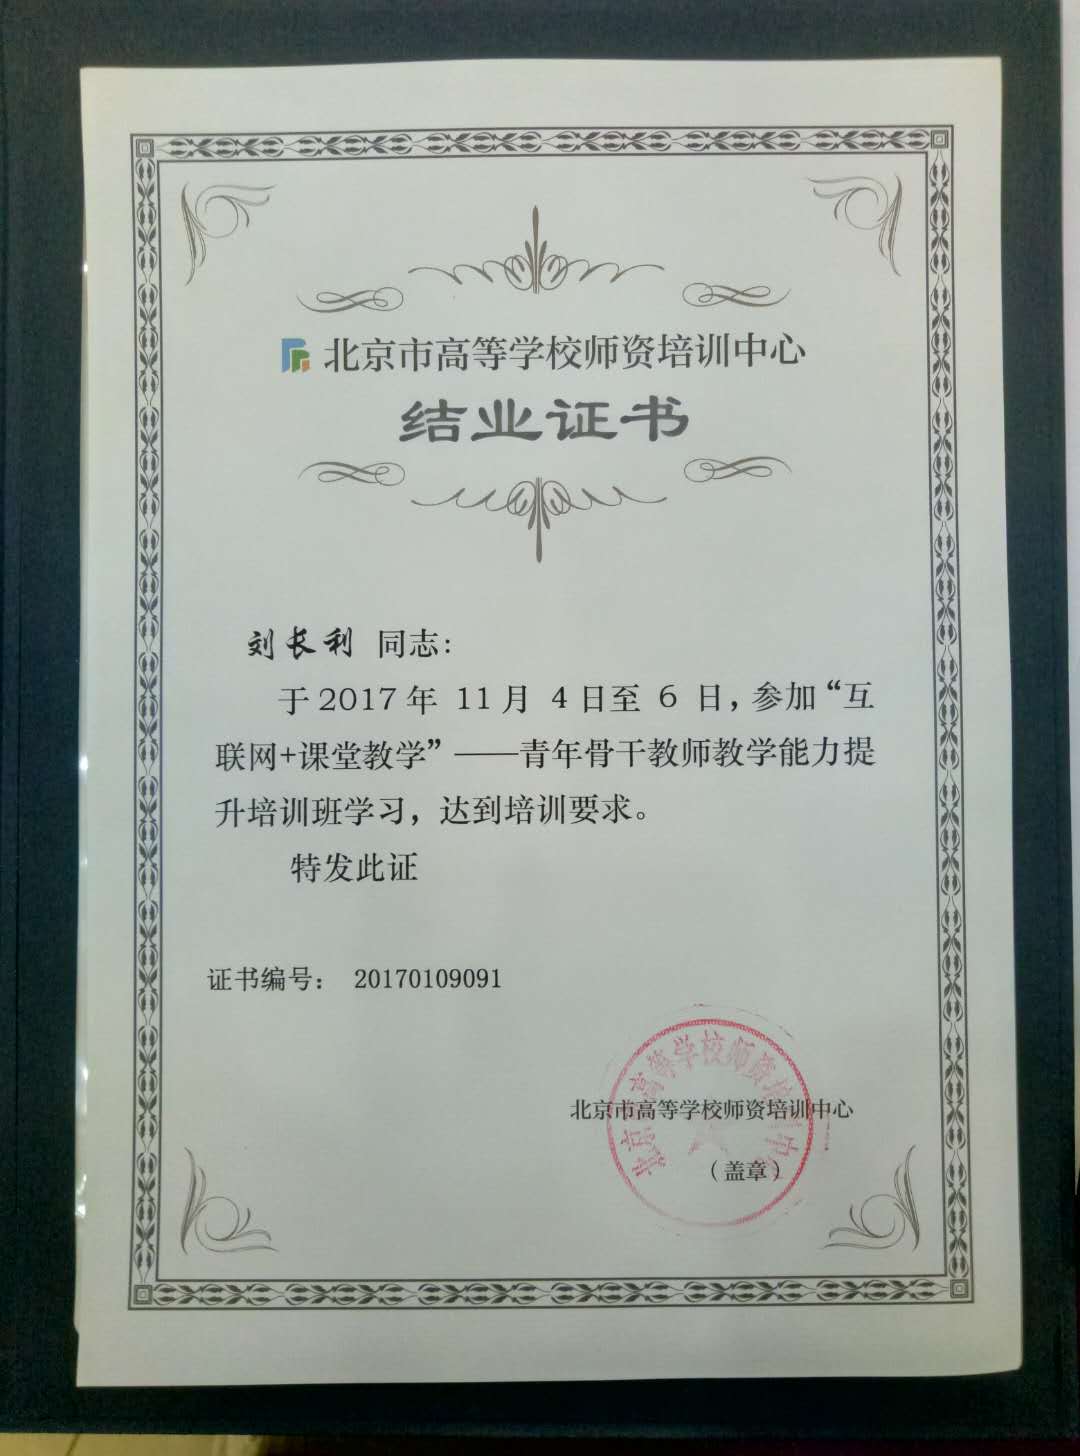 7刘长利2017年11月4日至6日参加高师培训的结业证.jpg